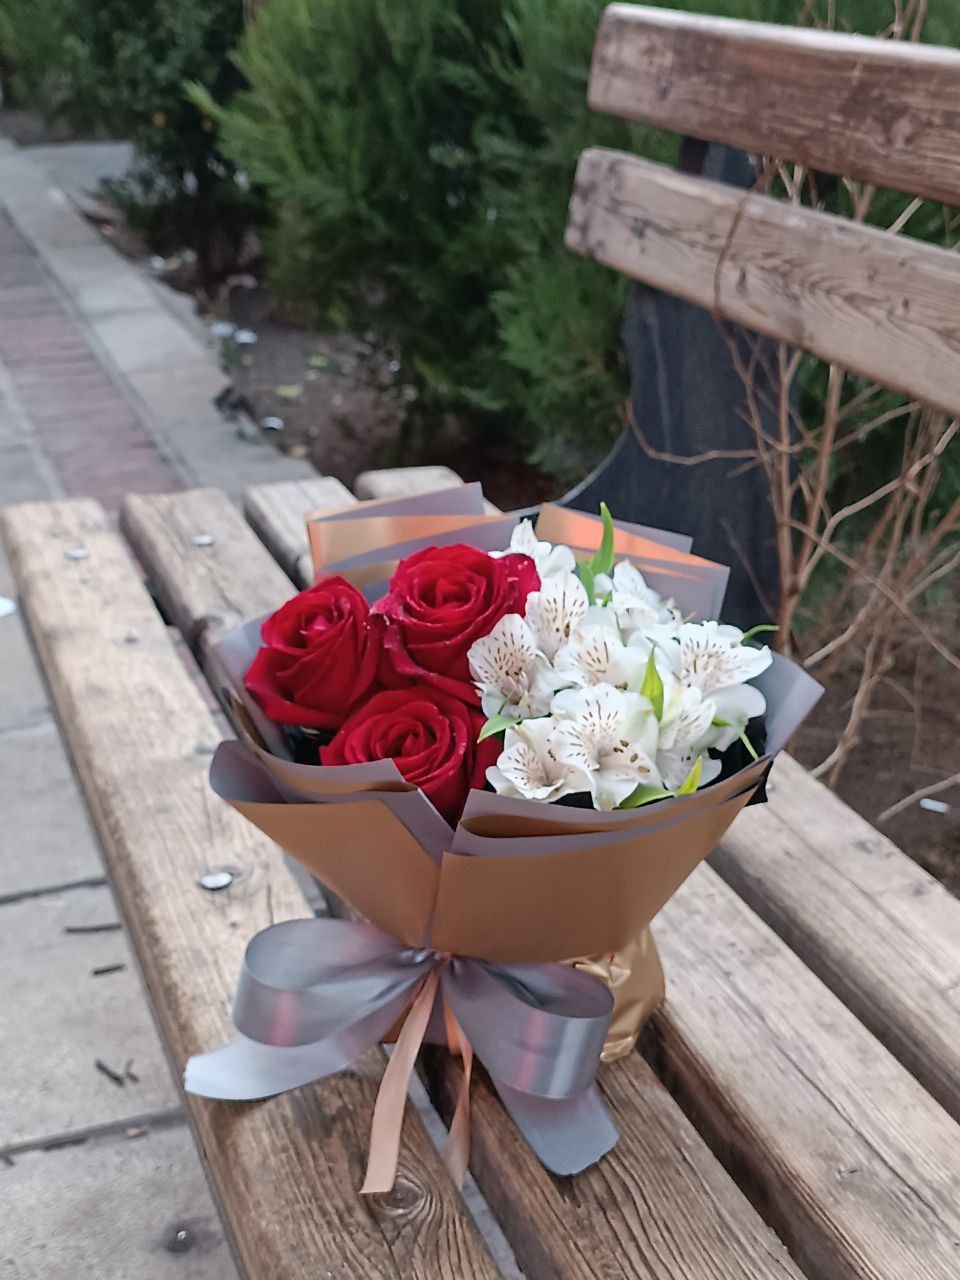 سفارش و خرید آنلاین باکس گل تولد فلاوربگ طرح سوسن از گلفروشی اطلس گل در شیراز.